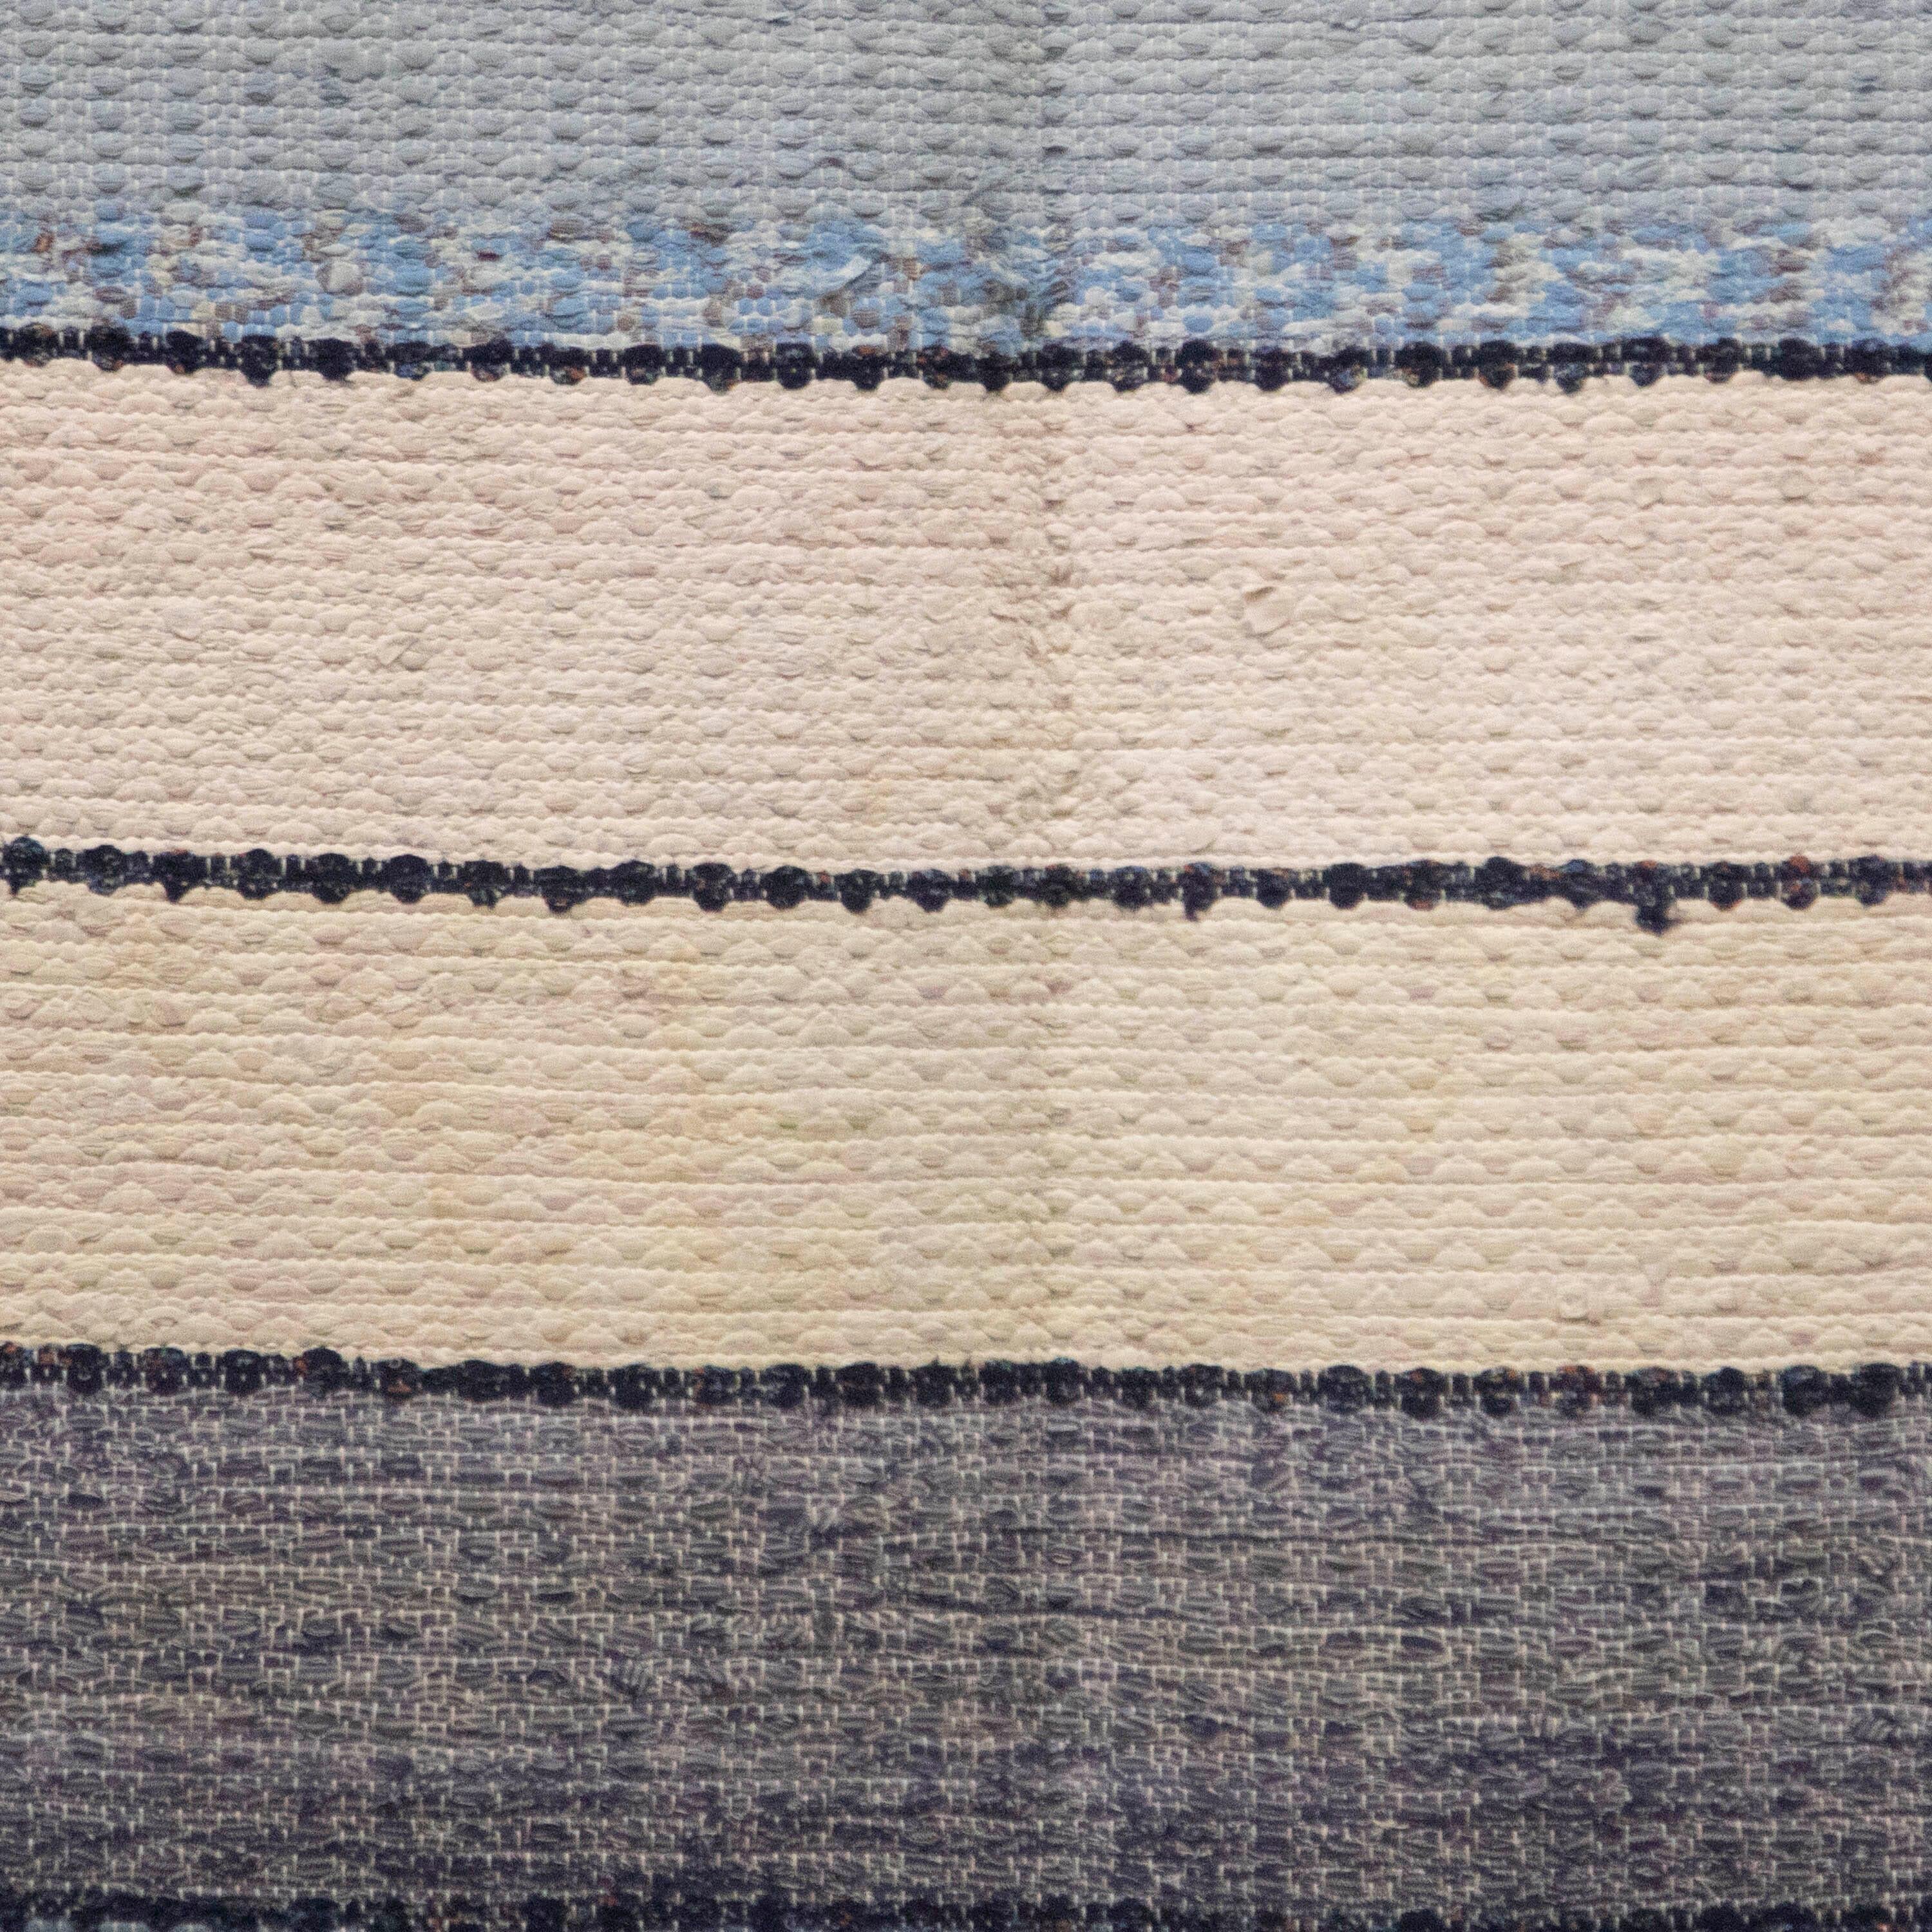 Tapis suédois du 20e siècle. Il présente un motif à rayures dans les tons écru, bleu et aqua. Ce tapis est lavable en machine à 30 degrés.
RT6024599.